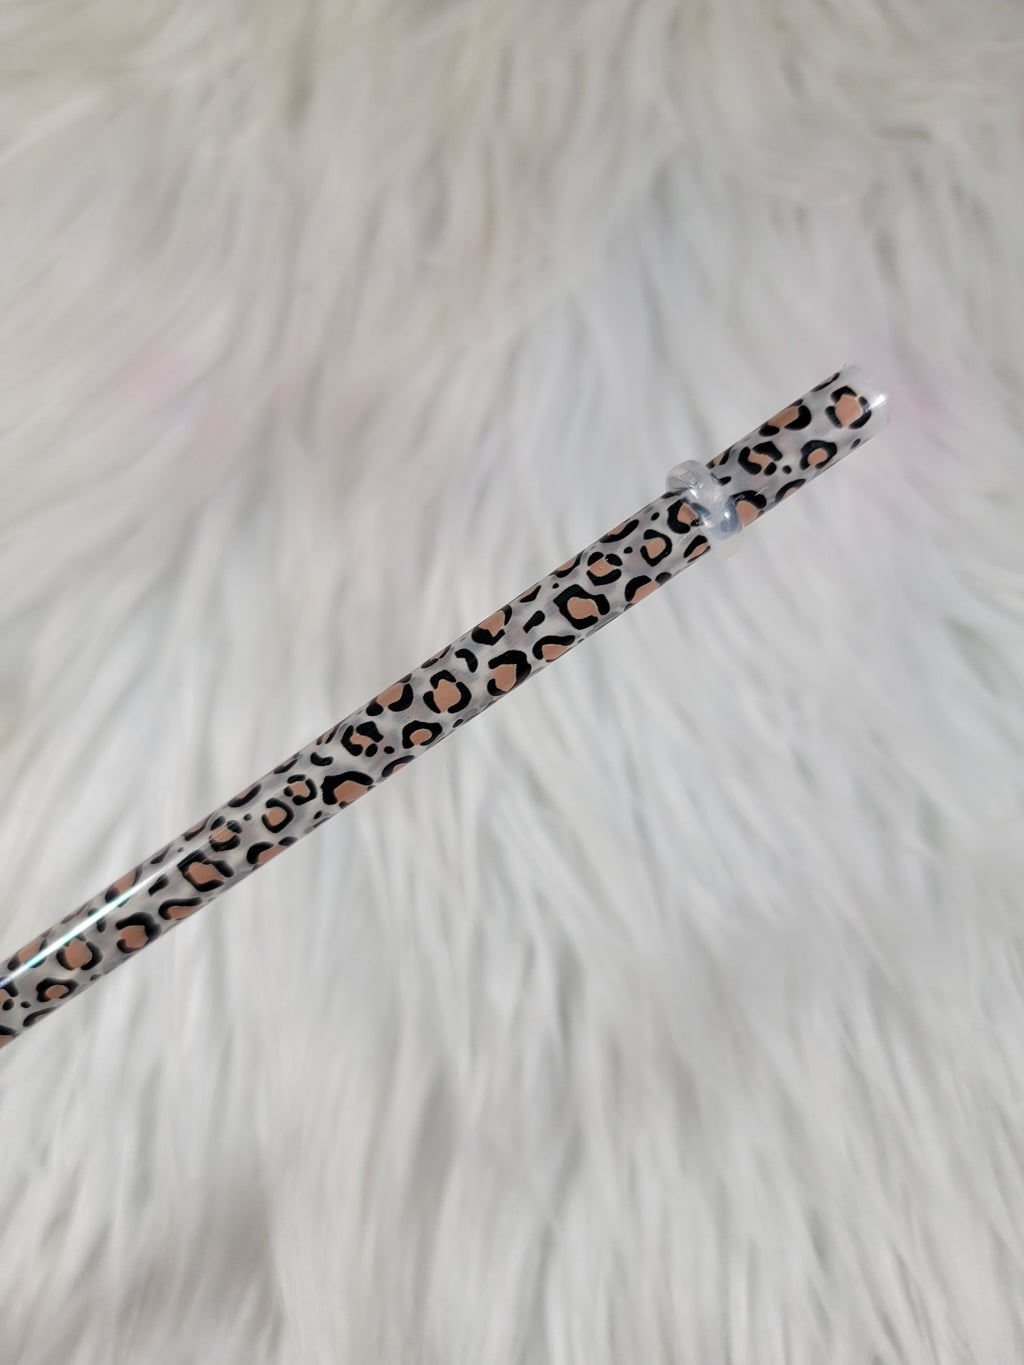 Leopard Tumbler straw